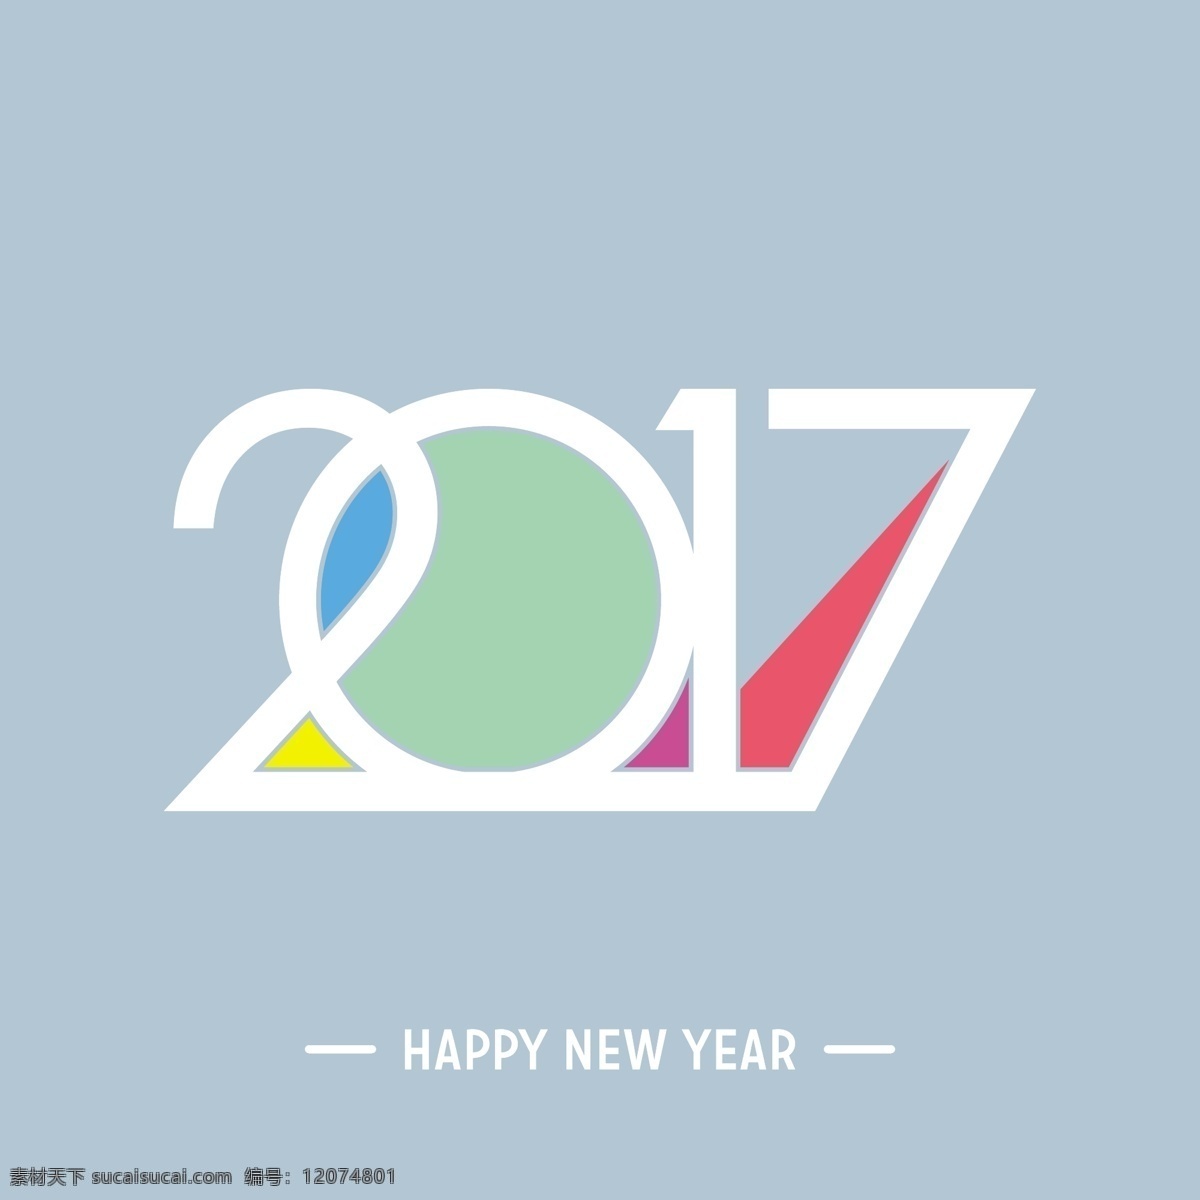 新年 快乐 2017 彩色印刷 背景 派对 抽象 新年快乐 色彩 庆典 新的 数字 事件 节日 创意 装饰 现代 年 节日快乐 象征 庆祝